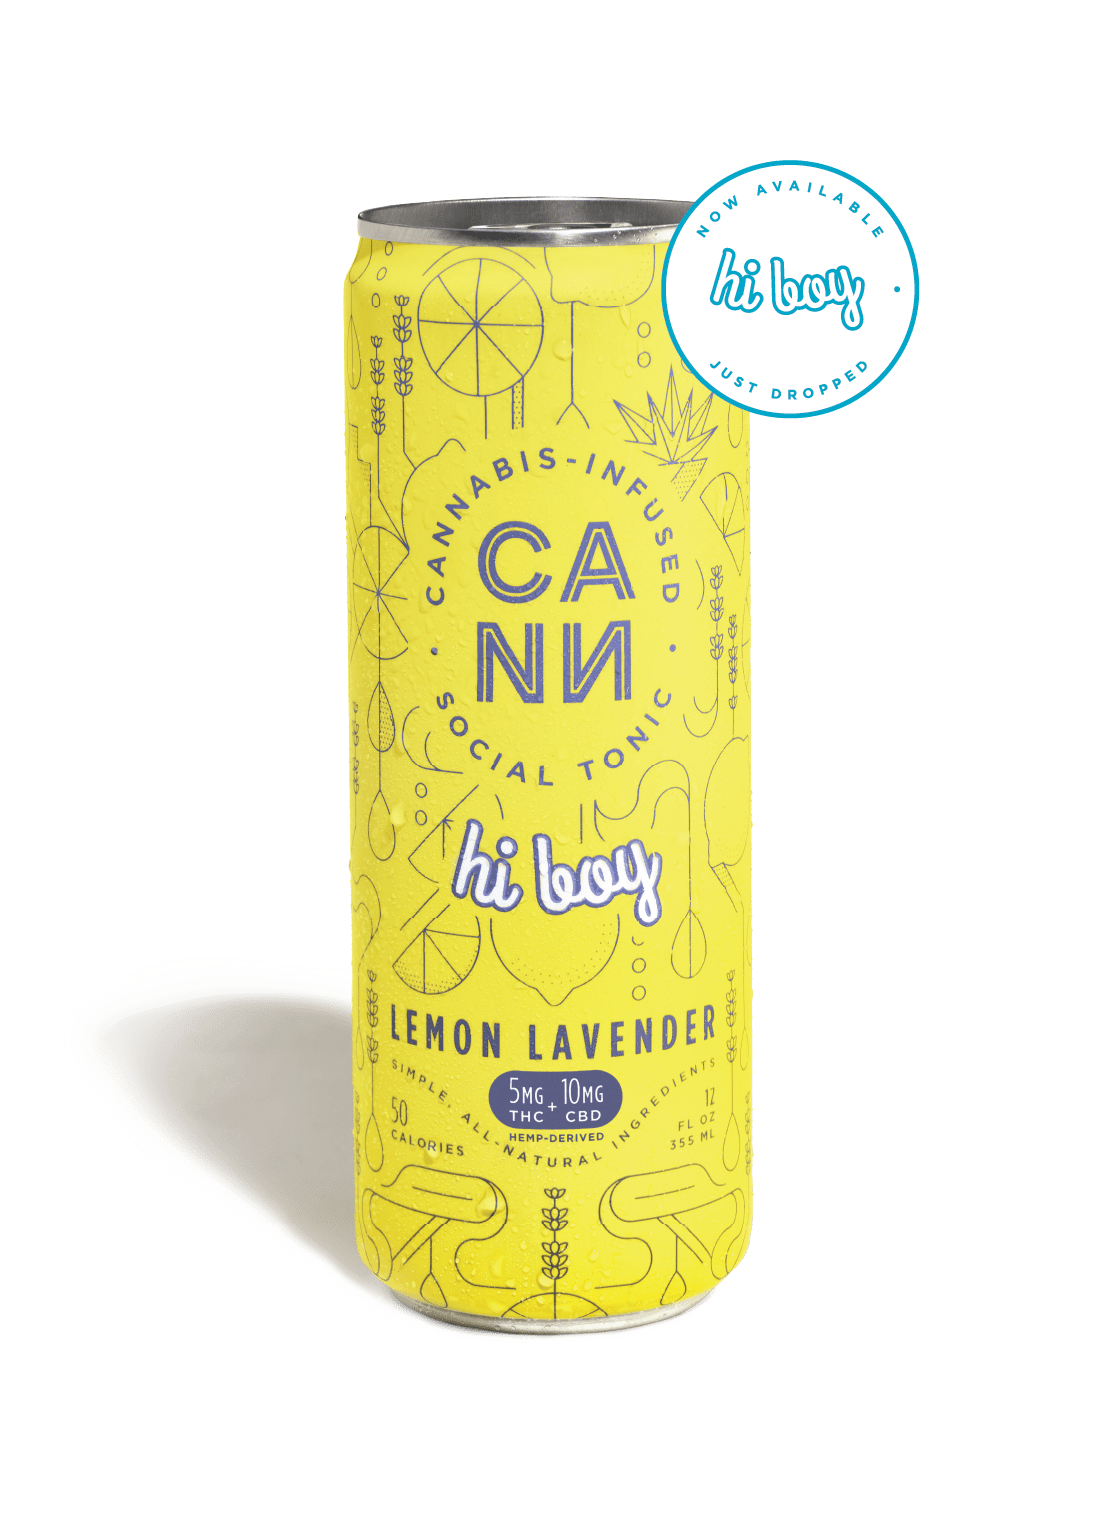 A can of Lemon Lavender Hi Boy on a black background.